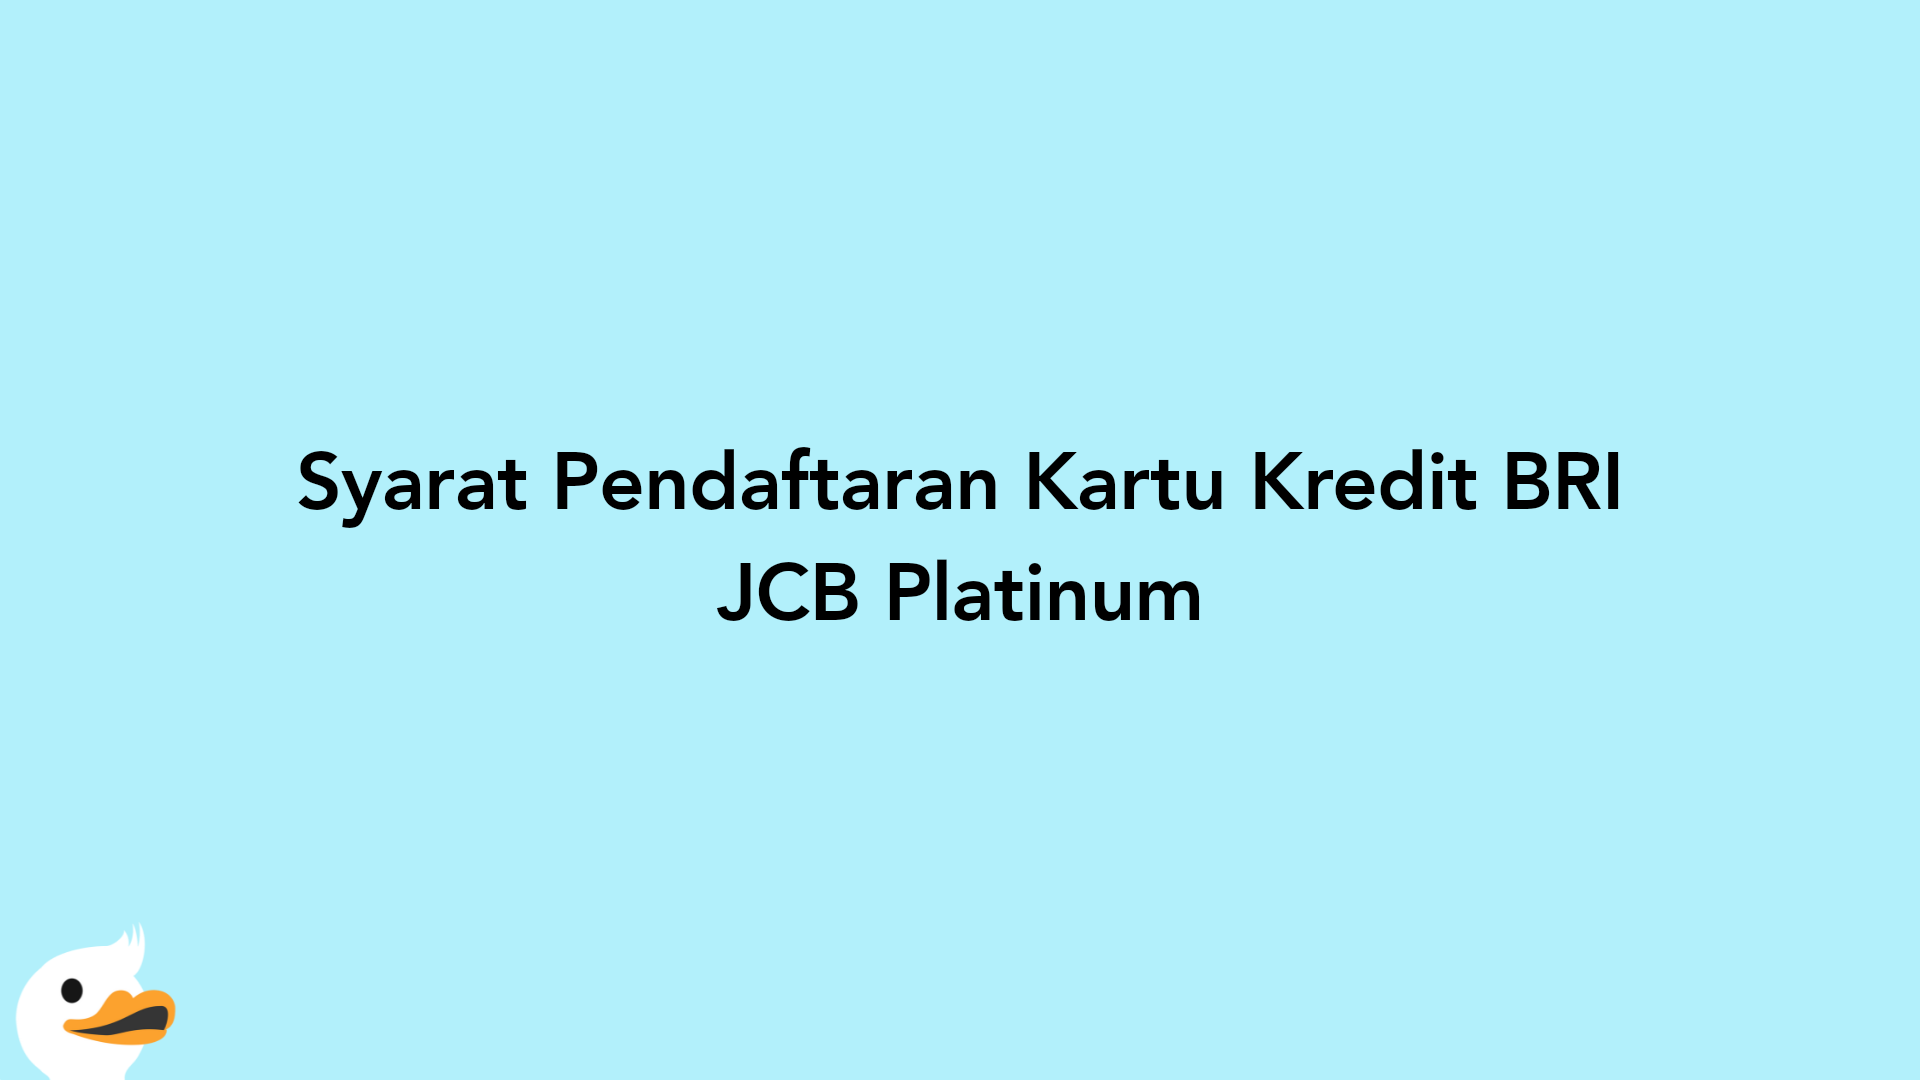 Syarat Pendaftaran Kartu Kredit BRI JCB Platinum